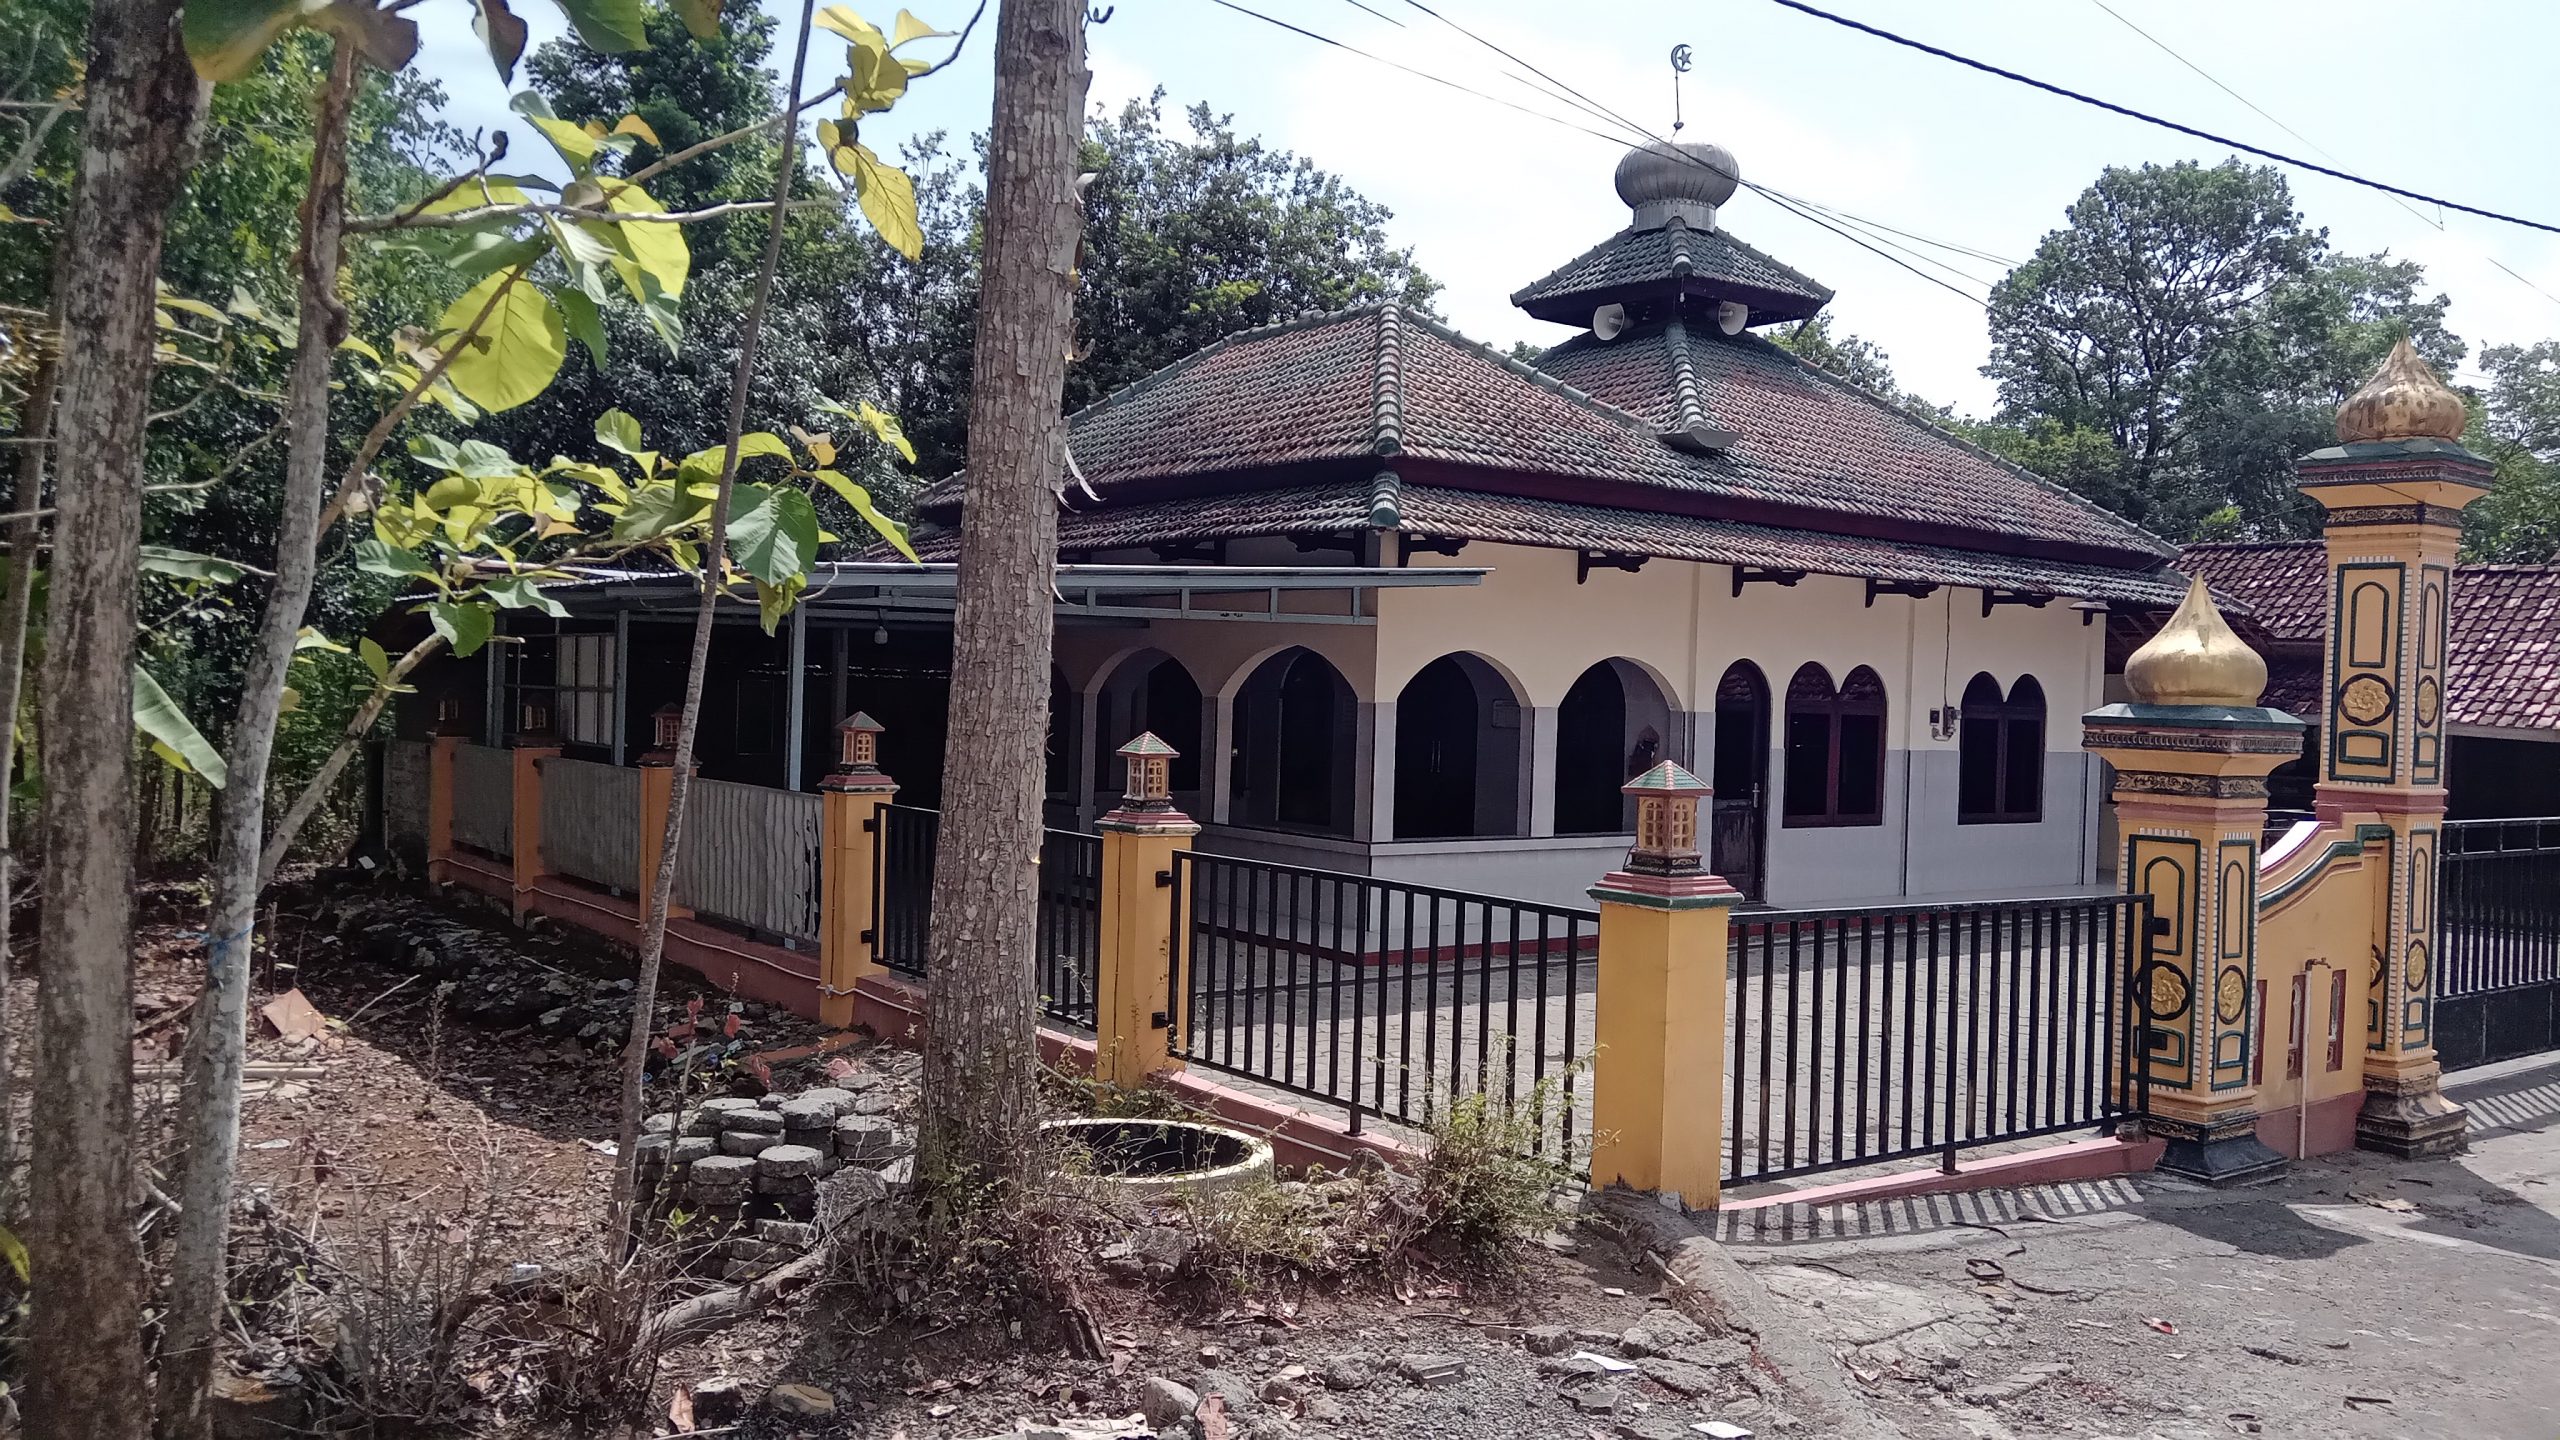 Usulan Lokasi Sedekah Air untuk Masjid Nurul Iman Papringan, Semin, Kabupaten Gunungkidul, DI Yogyakarta